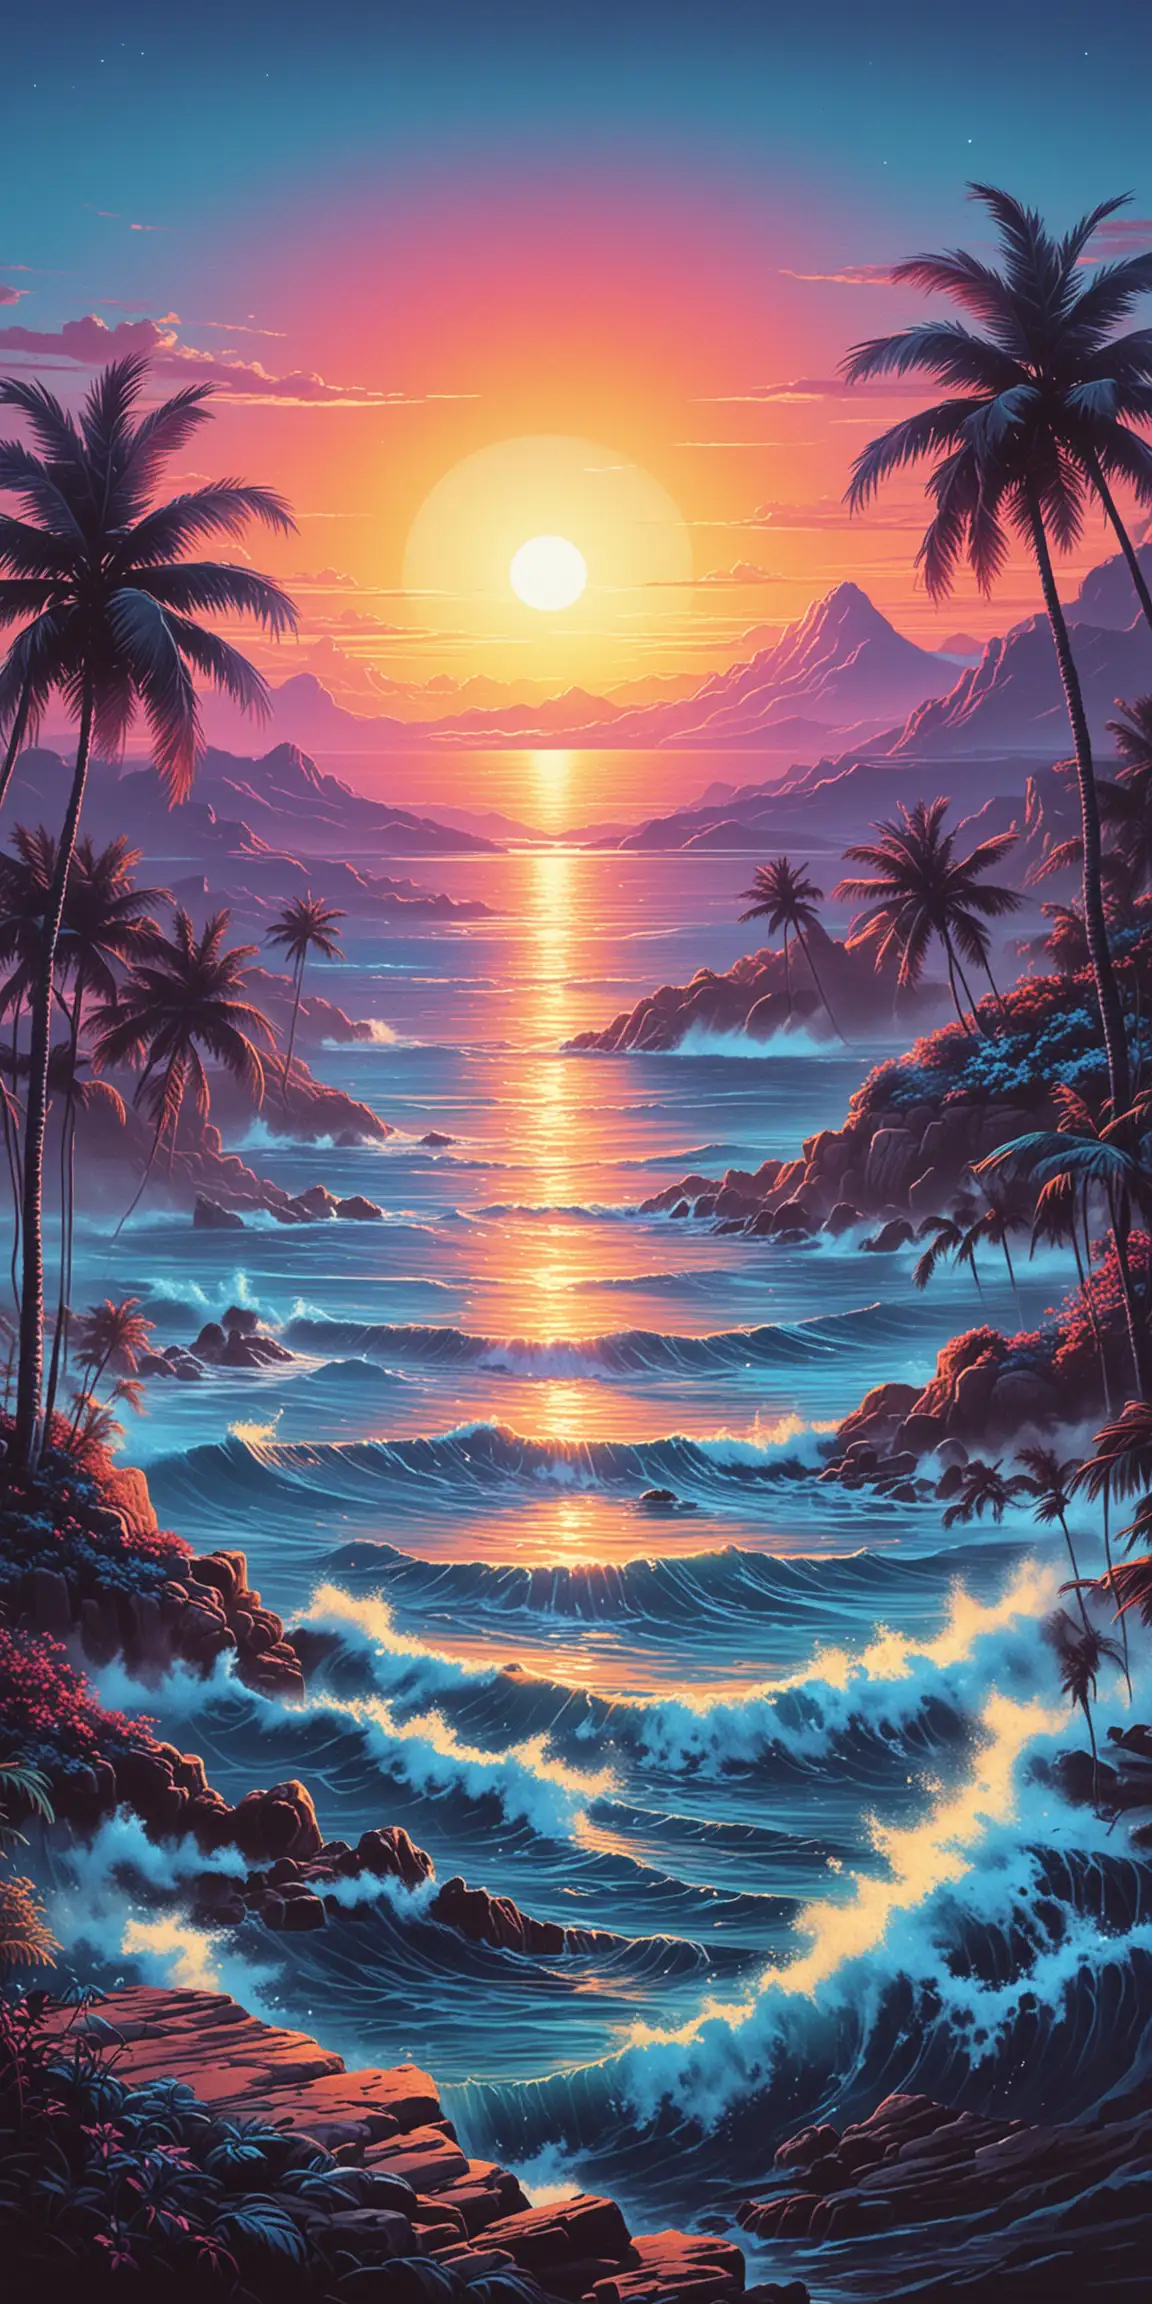 Nostalgic 80s Artwork Dreamy Blue Sunset Scene